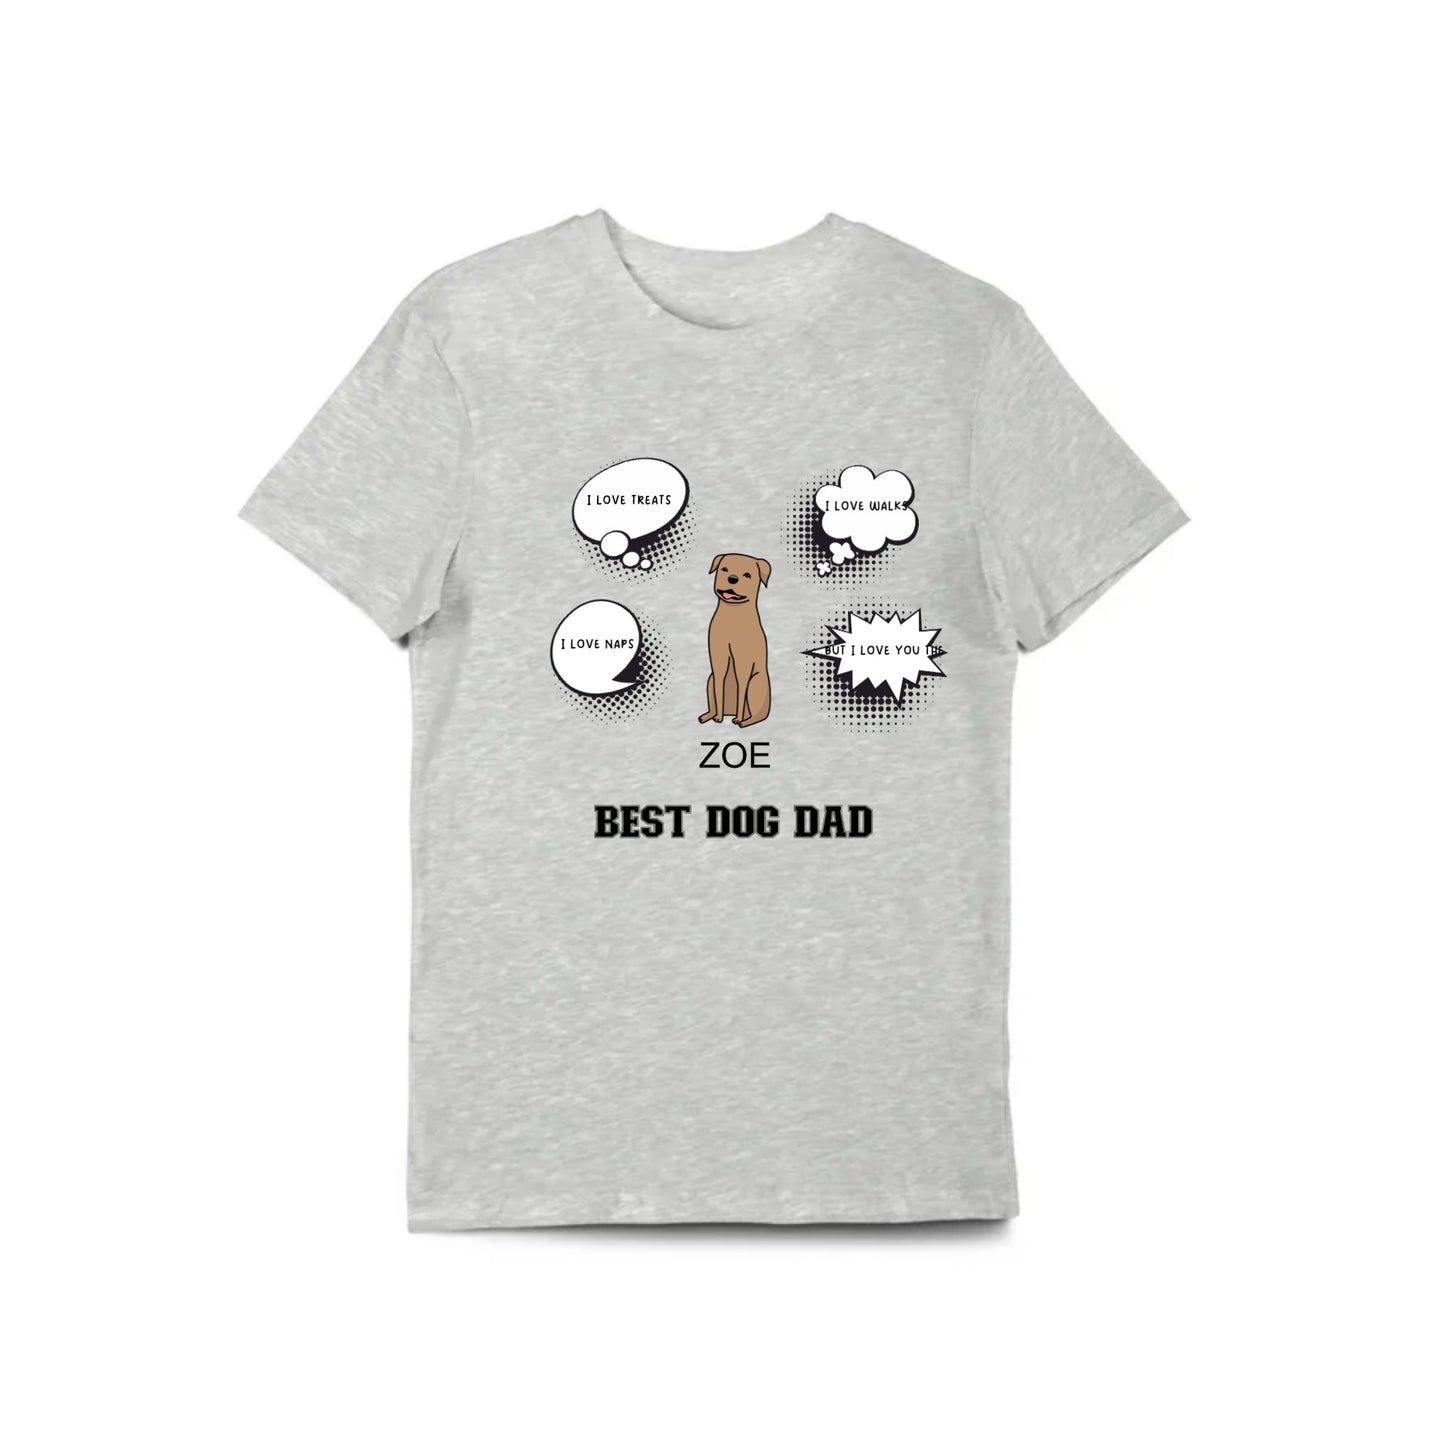 BEST DOG DAD G500 5.3 oz. T-Shirt